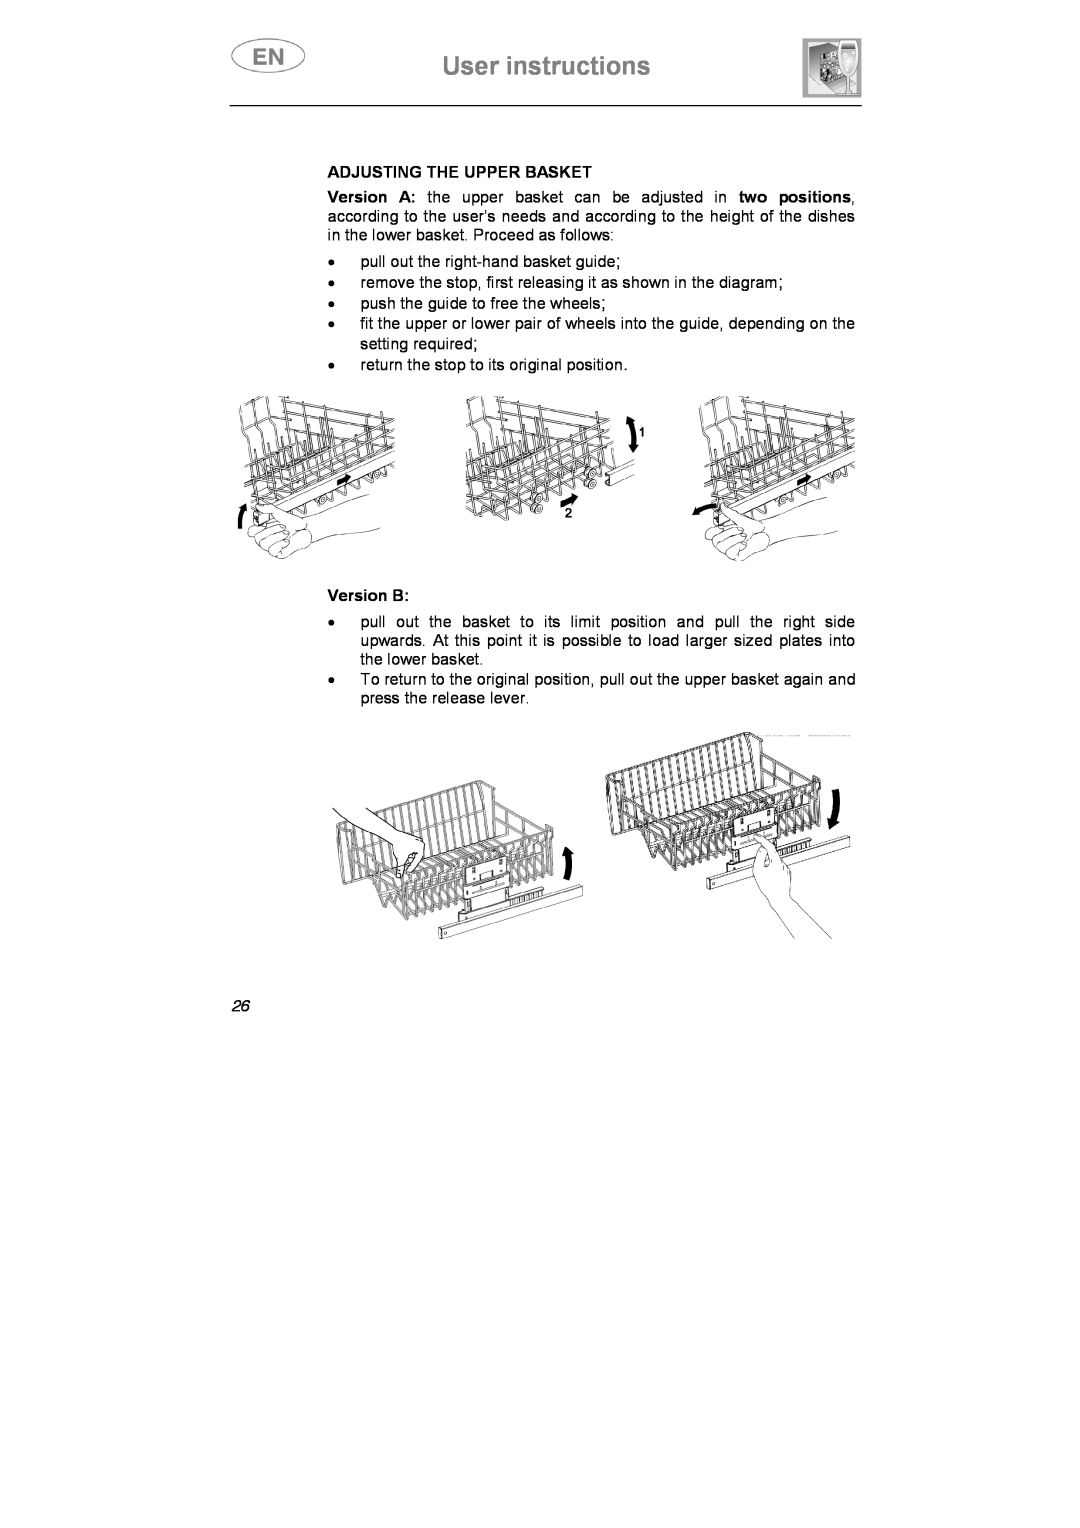 Smeg STA645Q manual User instructions, Adjusting The Upper Basket, Version B 